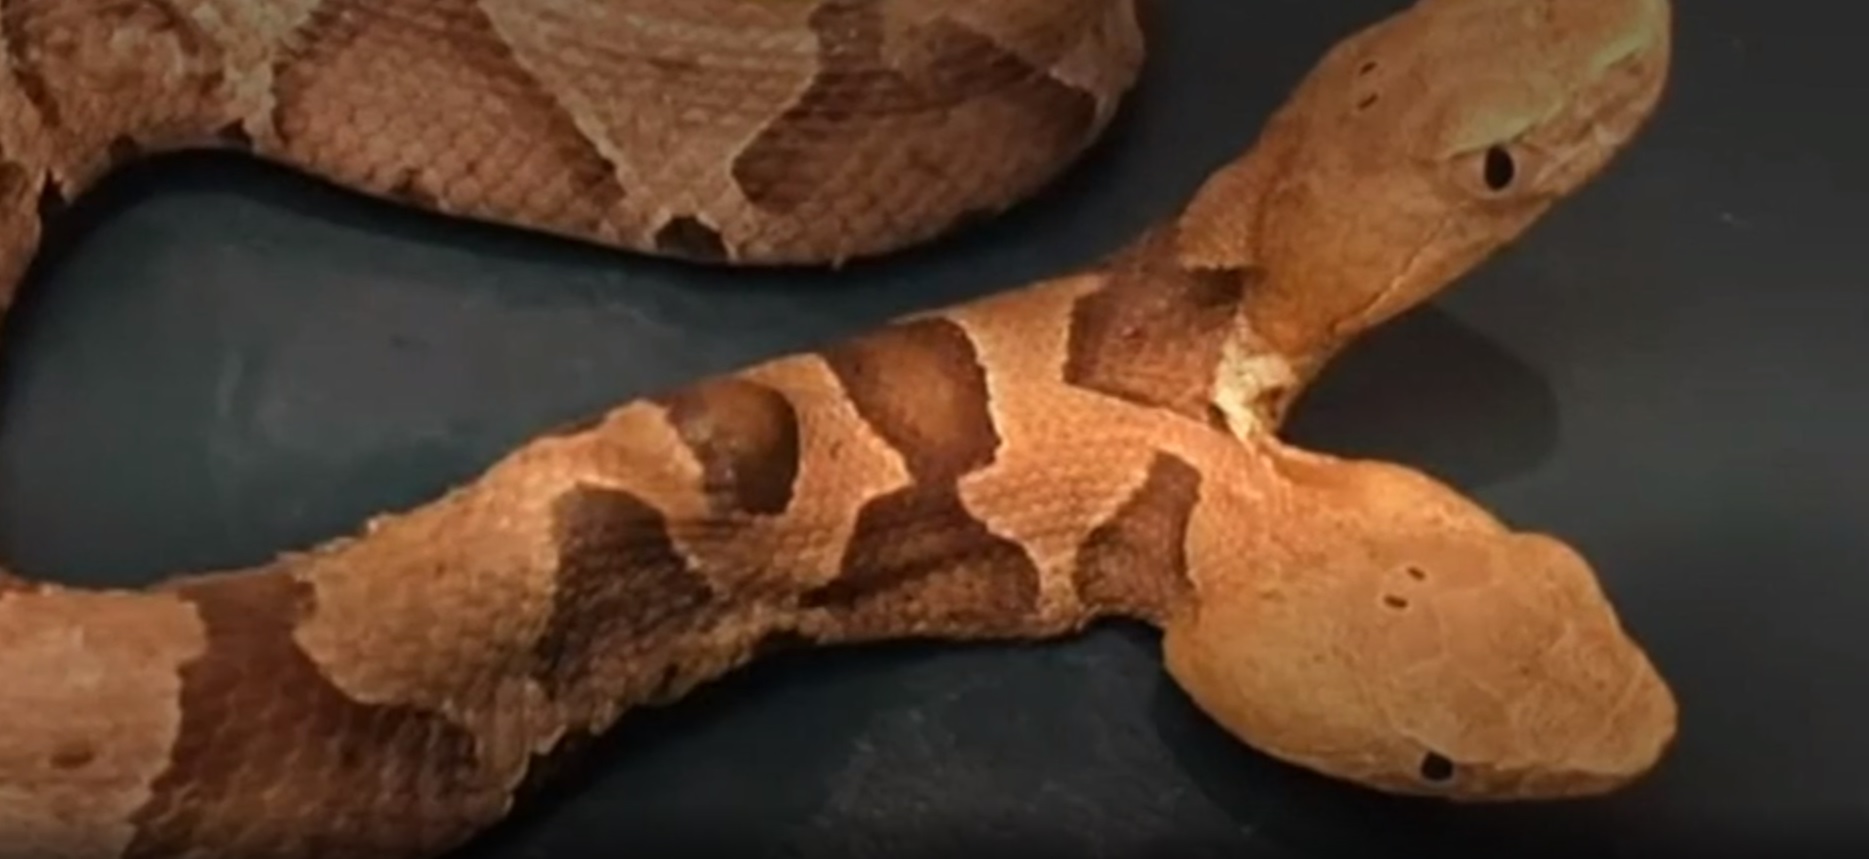 Találtak egy kétfejű kígyót Virginiában. Igen, egy kétfejű kígyót